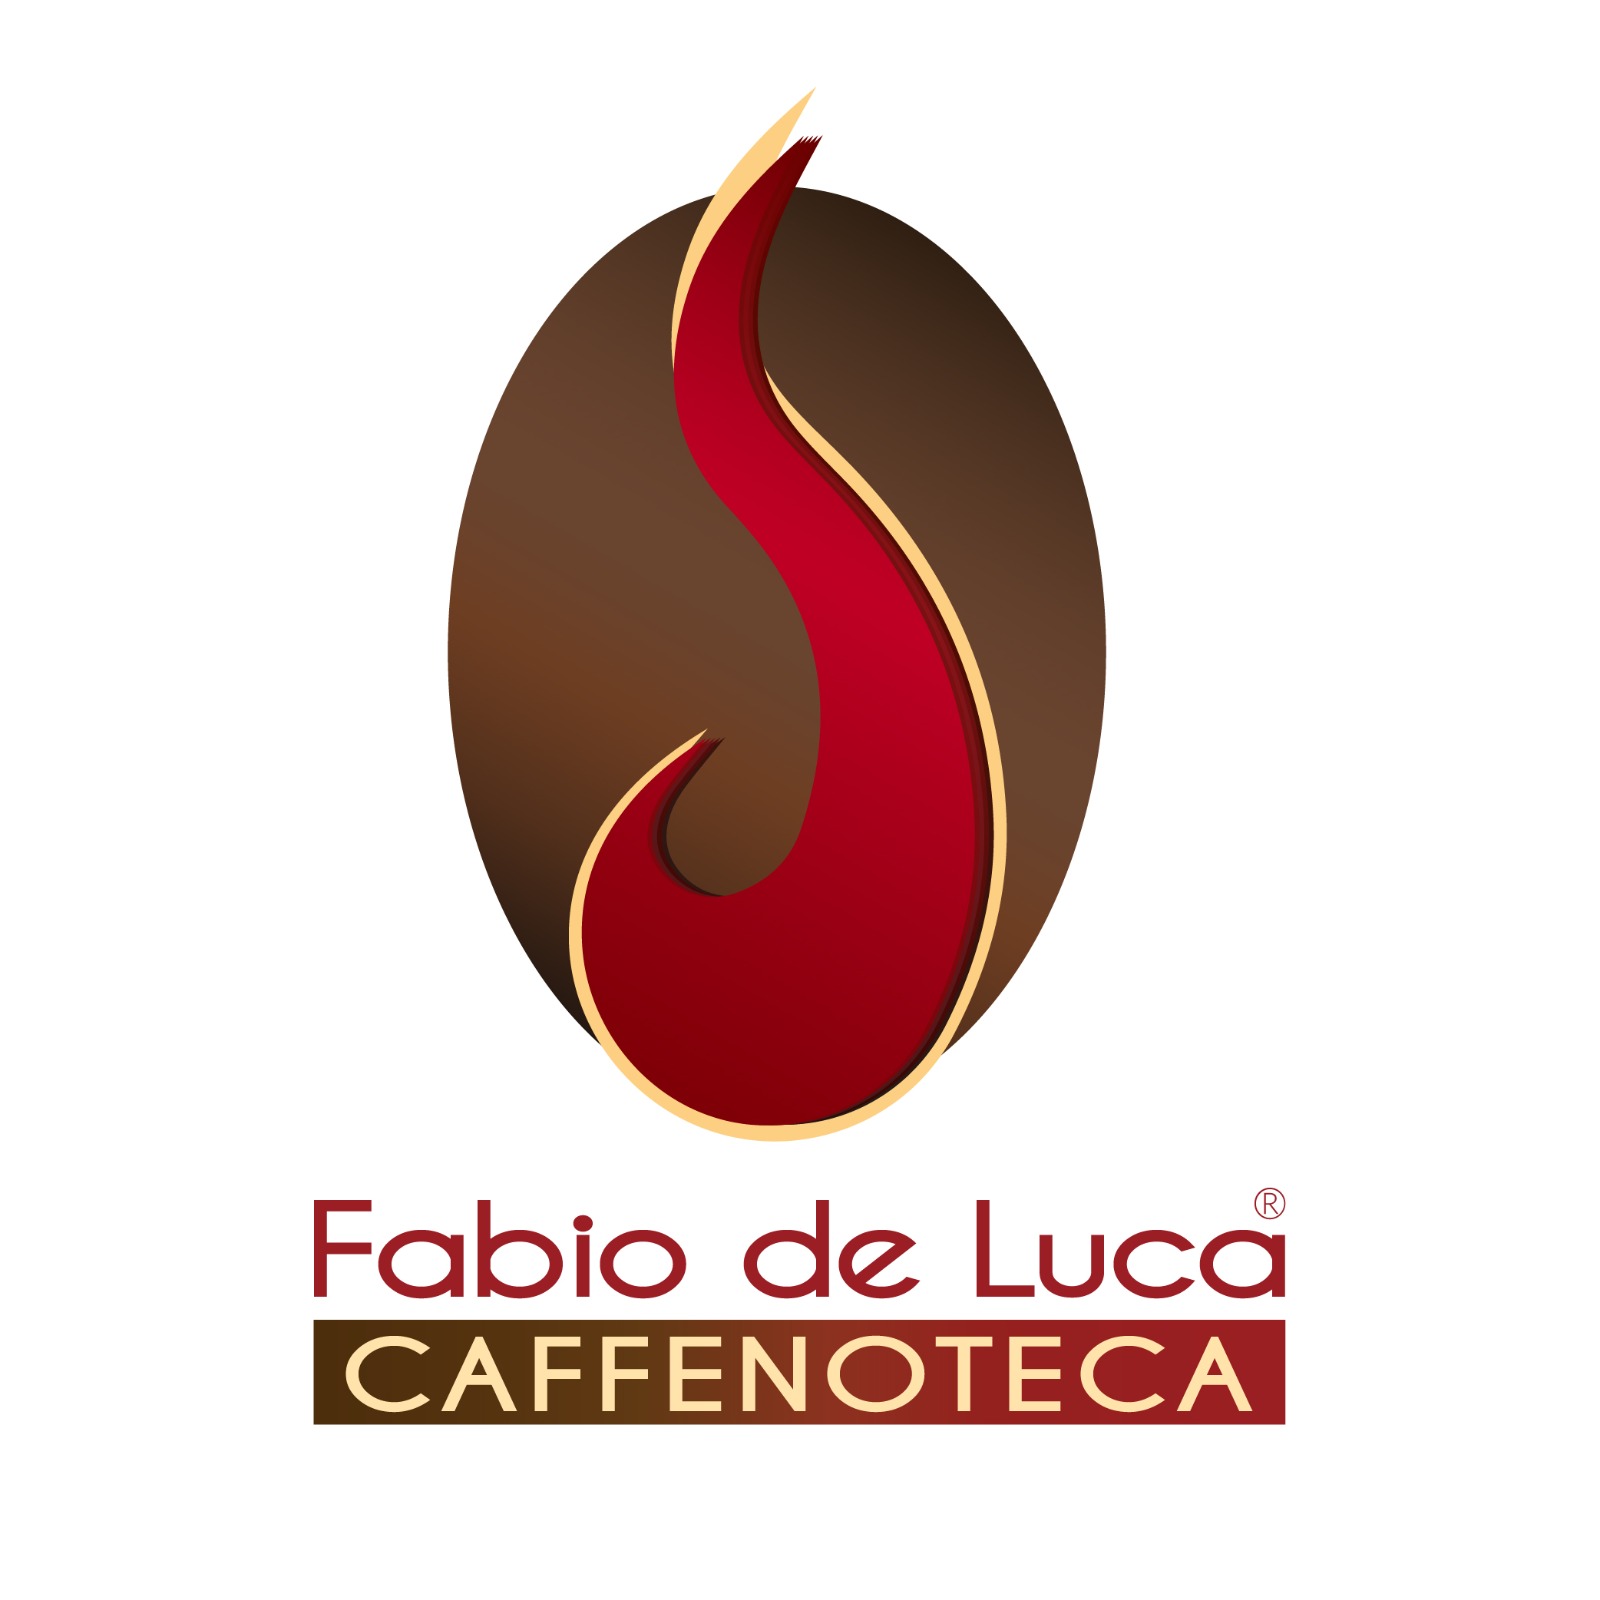 FABIO DE LUCA CAFFENOTECA